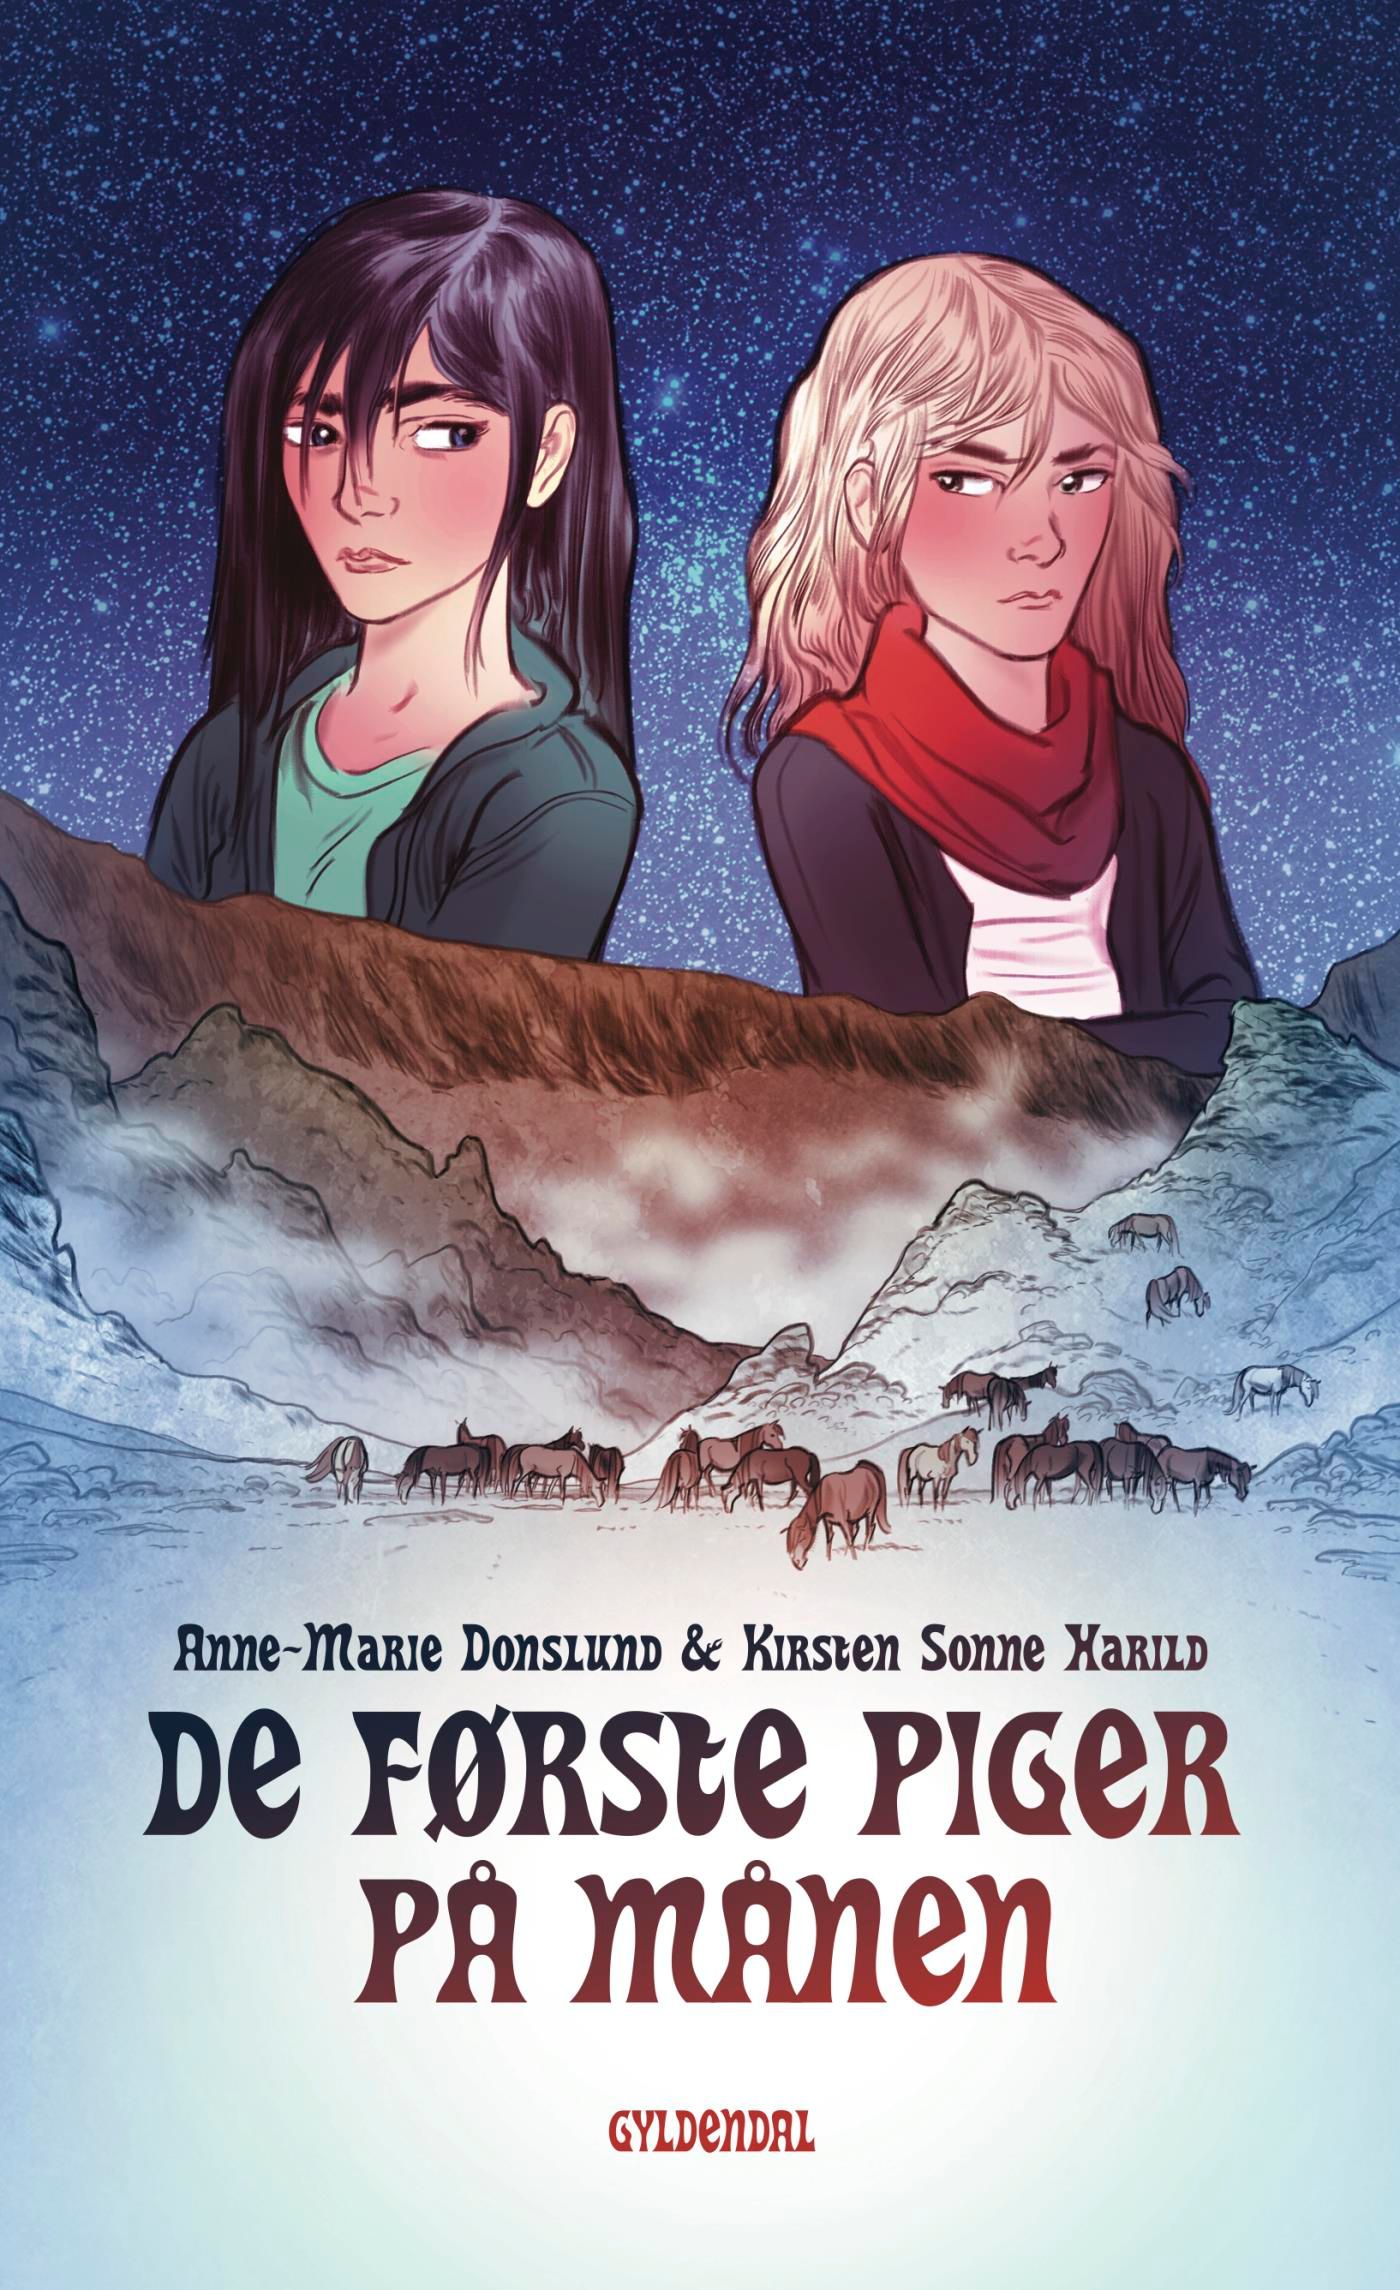 De første piger på månen, eBook by Anne-Marie Donslund, Kirsten Sonne Harild